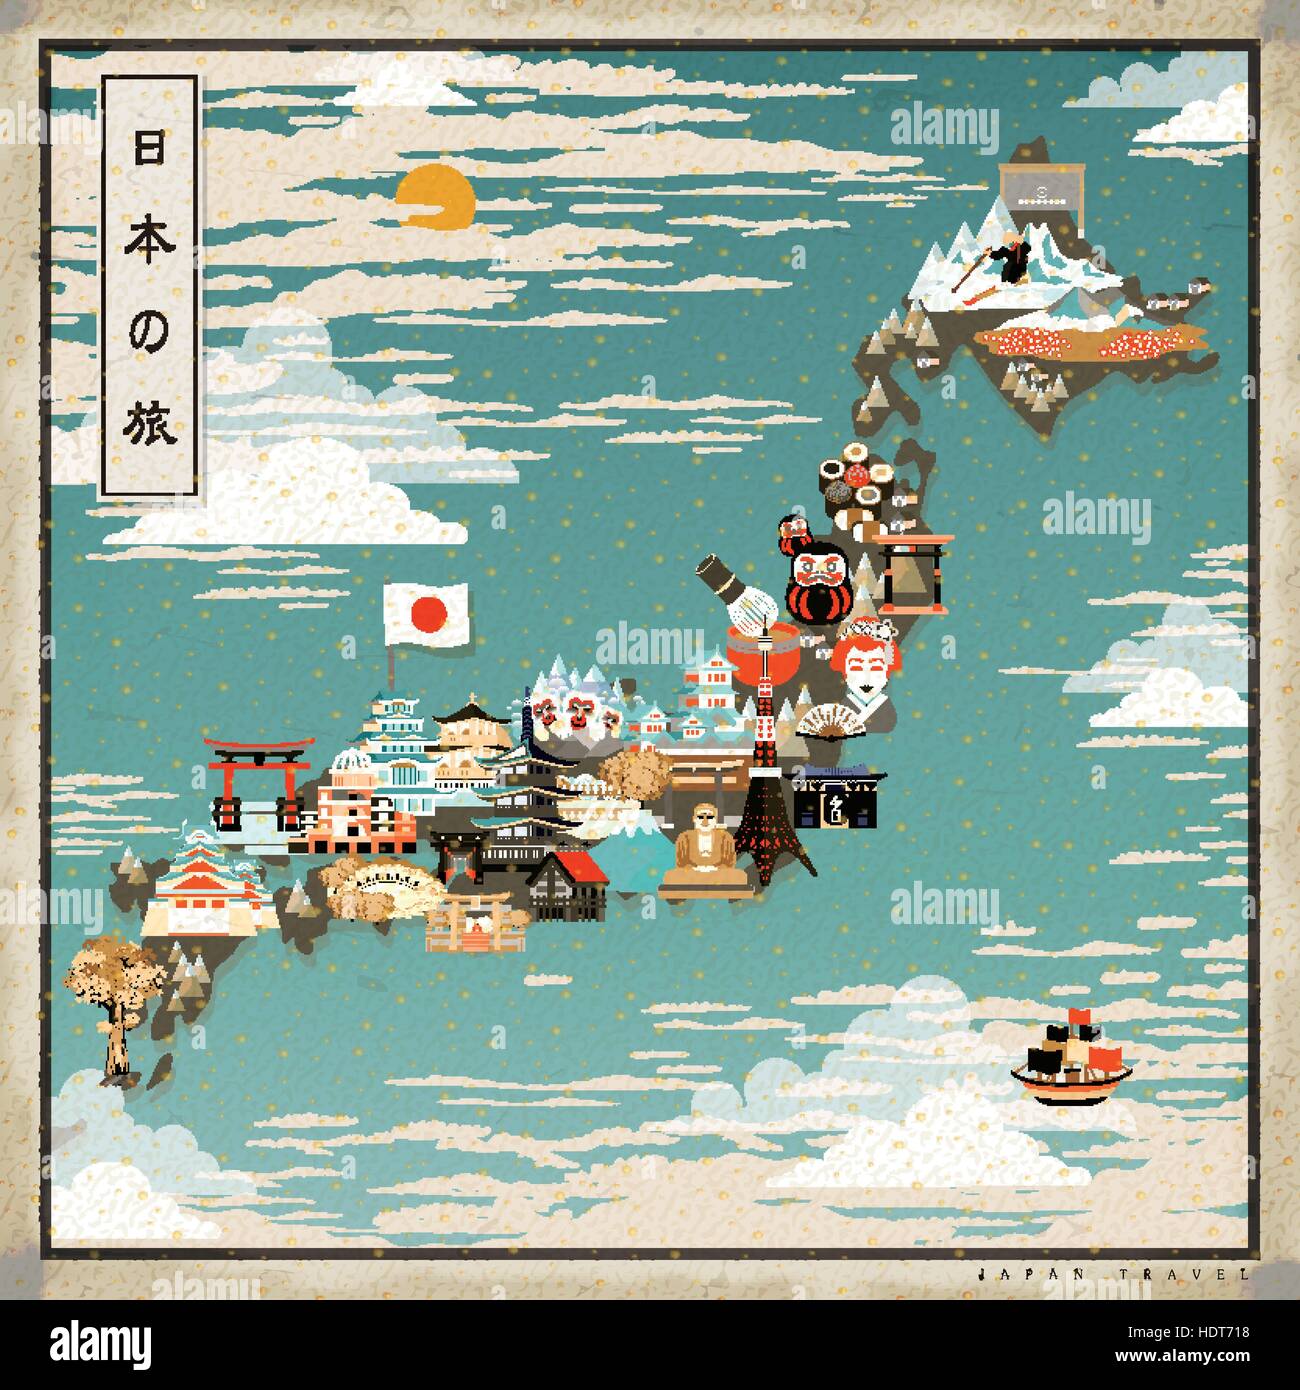 Bellissimo il Giappone mappa di viaggio - Giappone viaggi in giapponese su in alto a sinistra Illustrazione Vettoriale